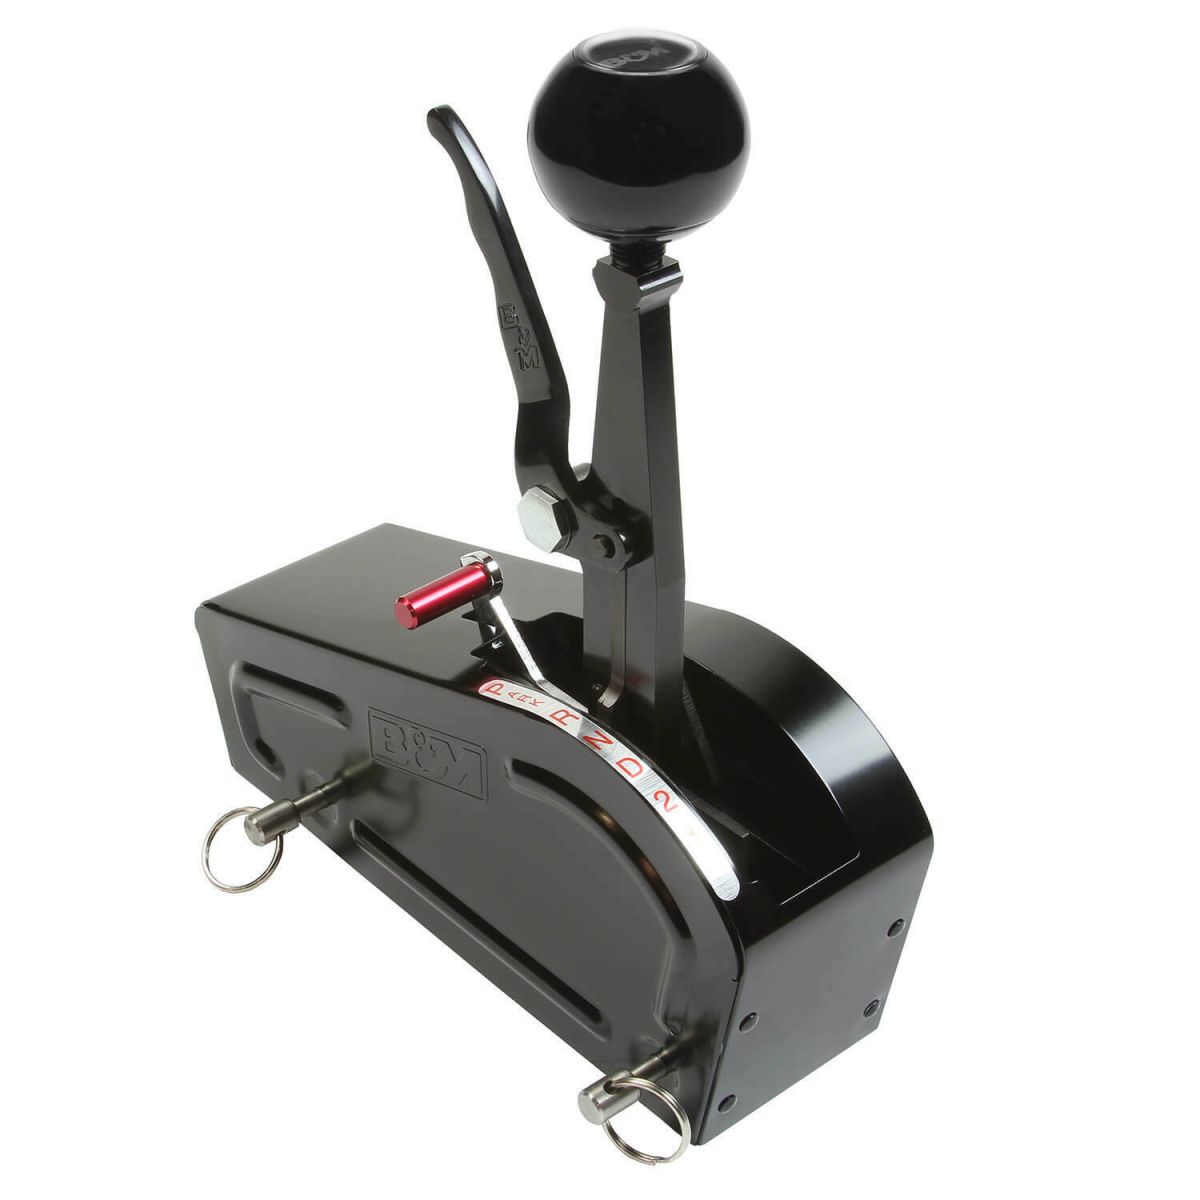 B&M - B&M Automatic Gated Shifter Pro Stick Black Universal 2, 3 & 4 Speed Compatible